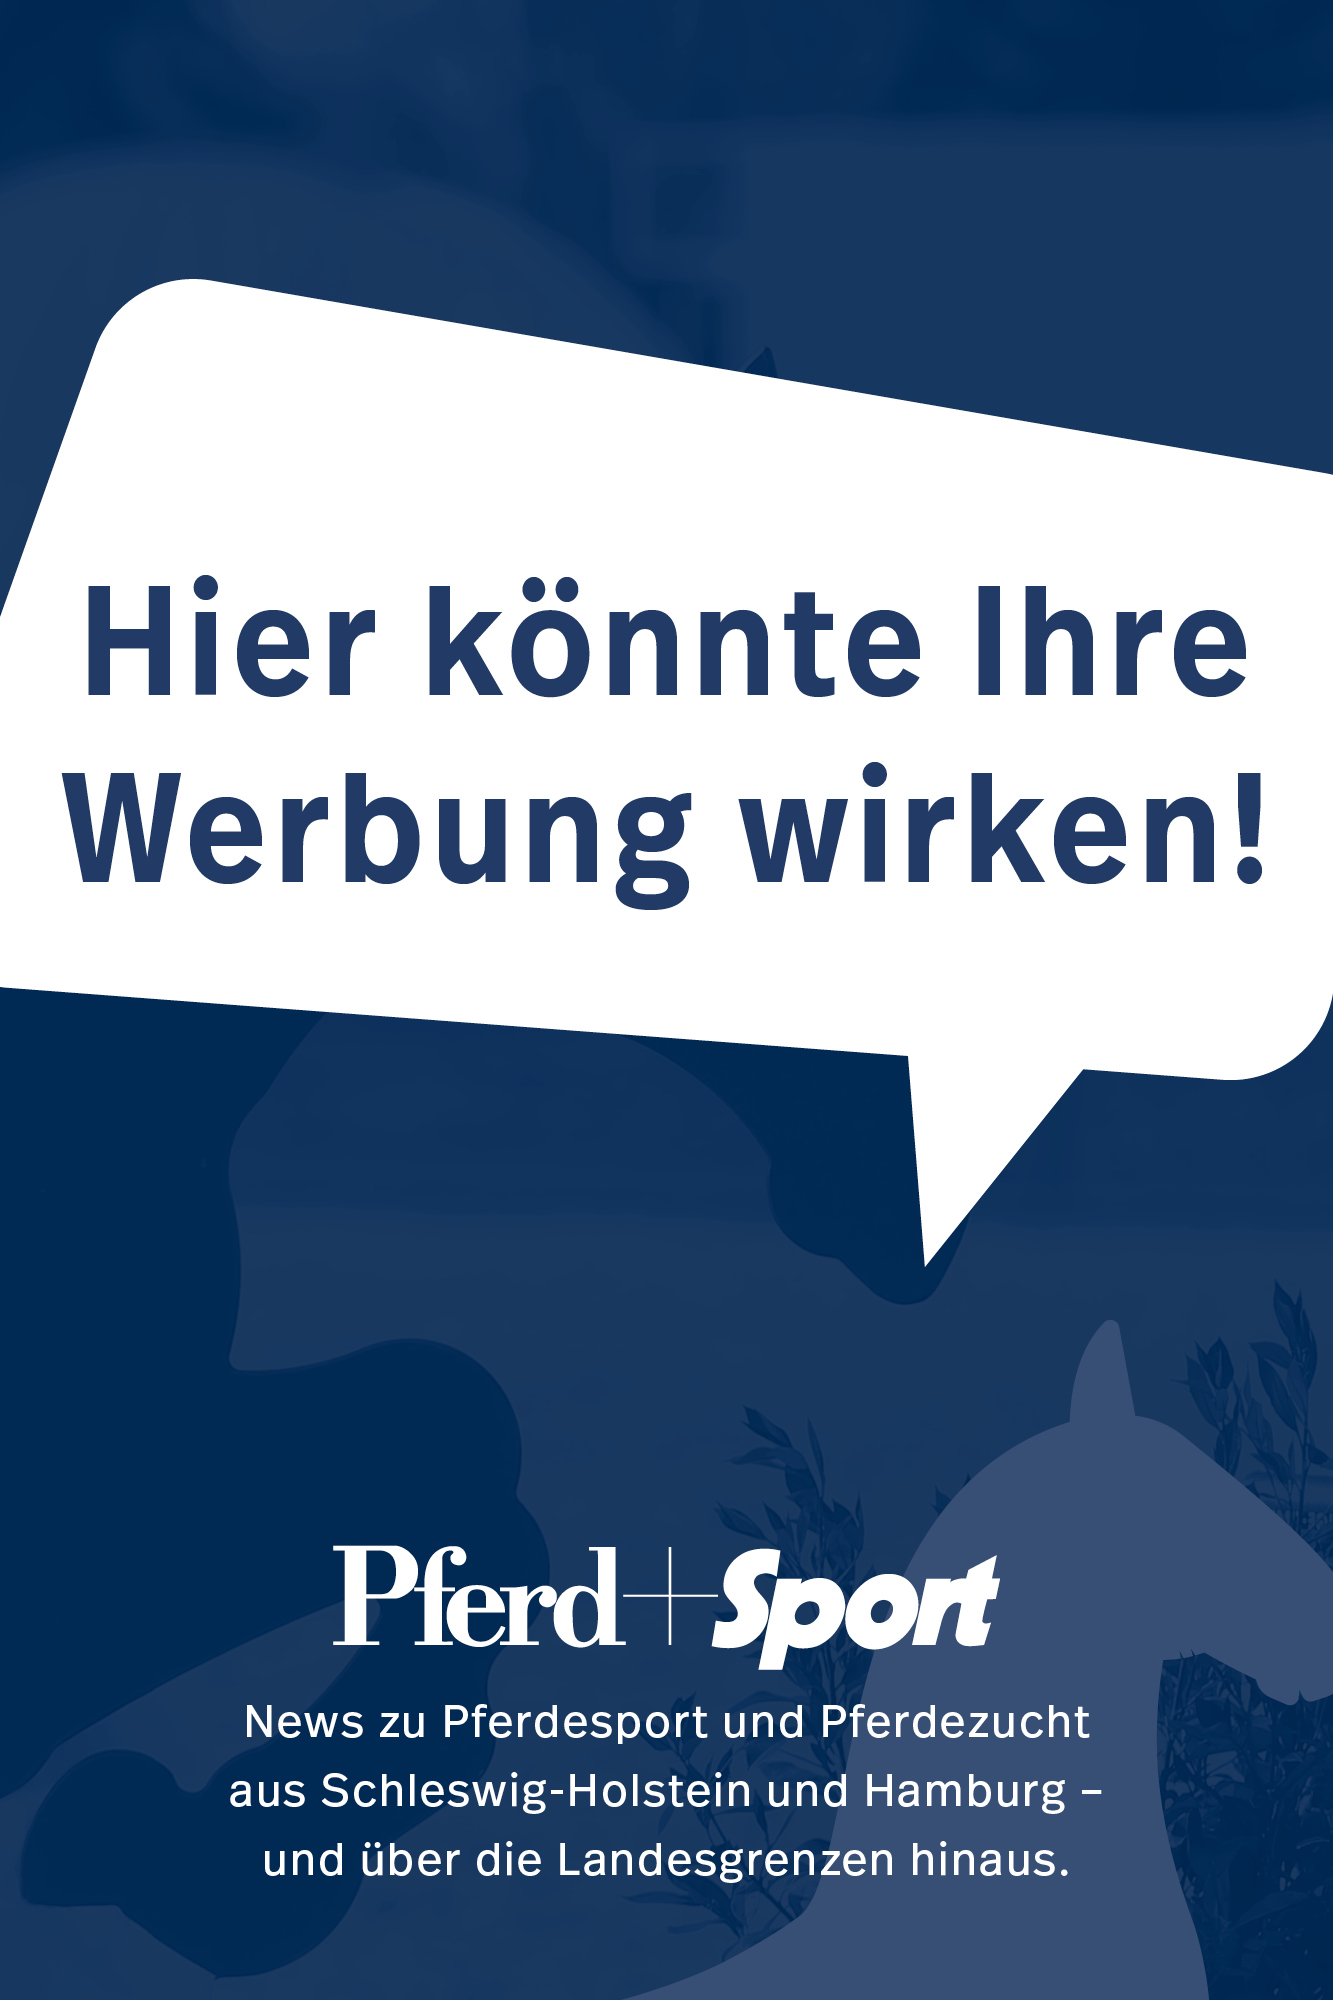 Pferd+Sport Zucht und Sport in Schleswig-Holstein und Hamburg, Holsteiner Zucht